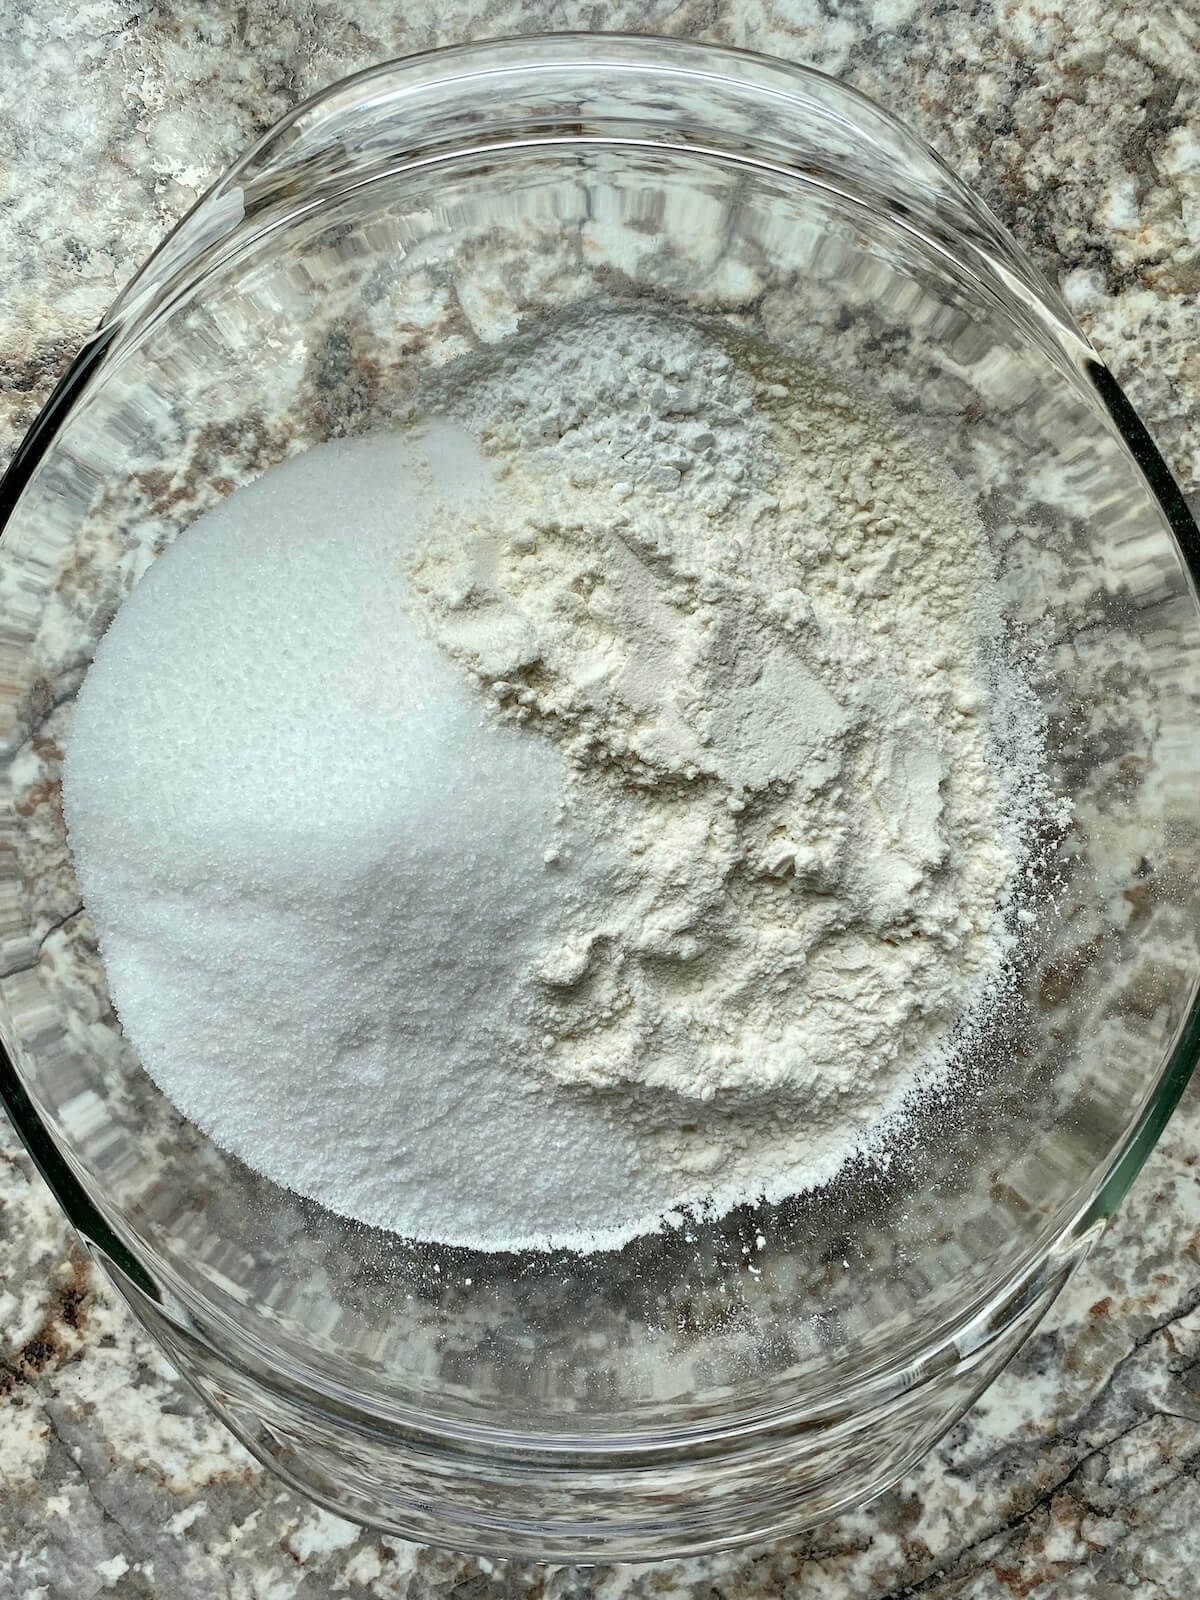 Flour, sugar, salt, and baking powder in a clear glass bowl.